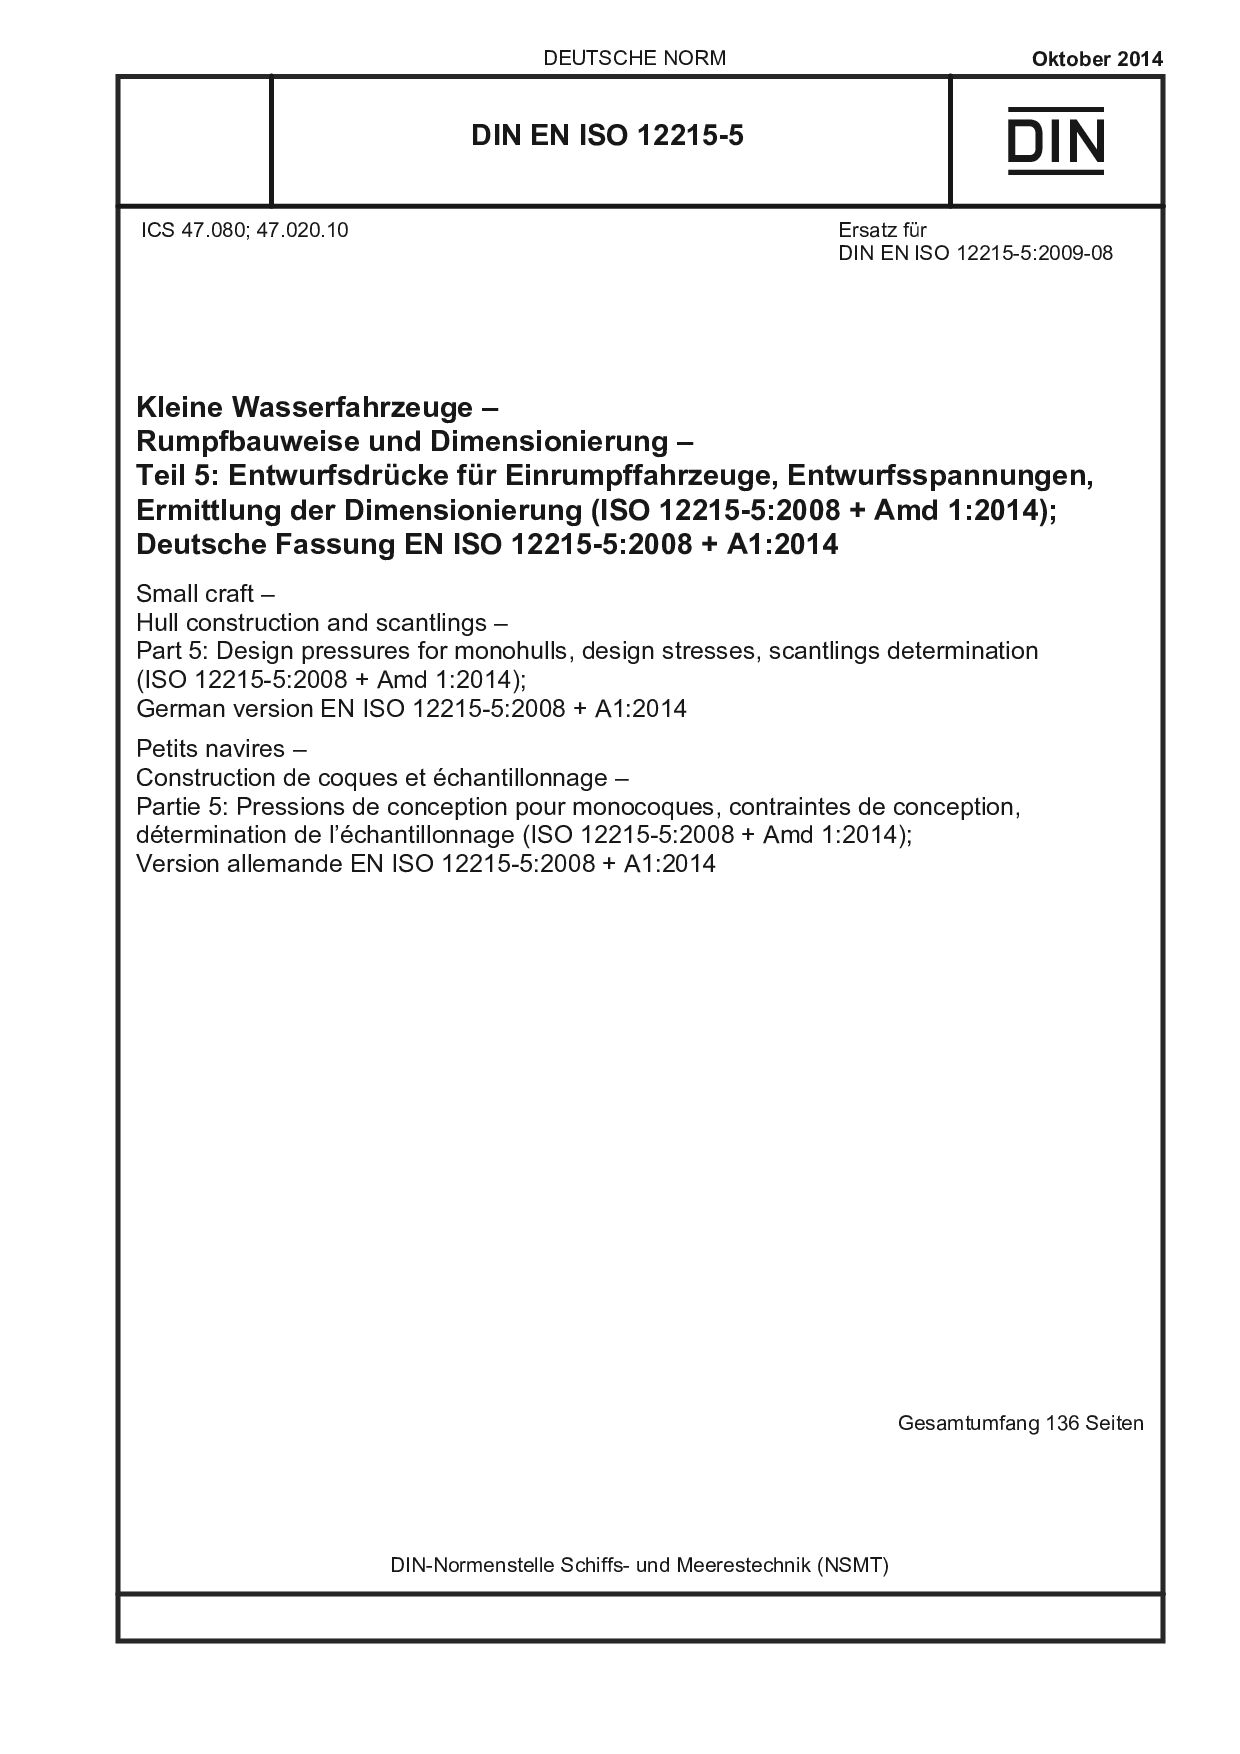 DIN EN ISO 12215-5:2014封面图